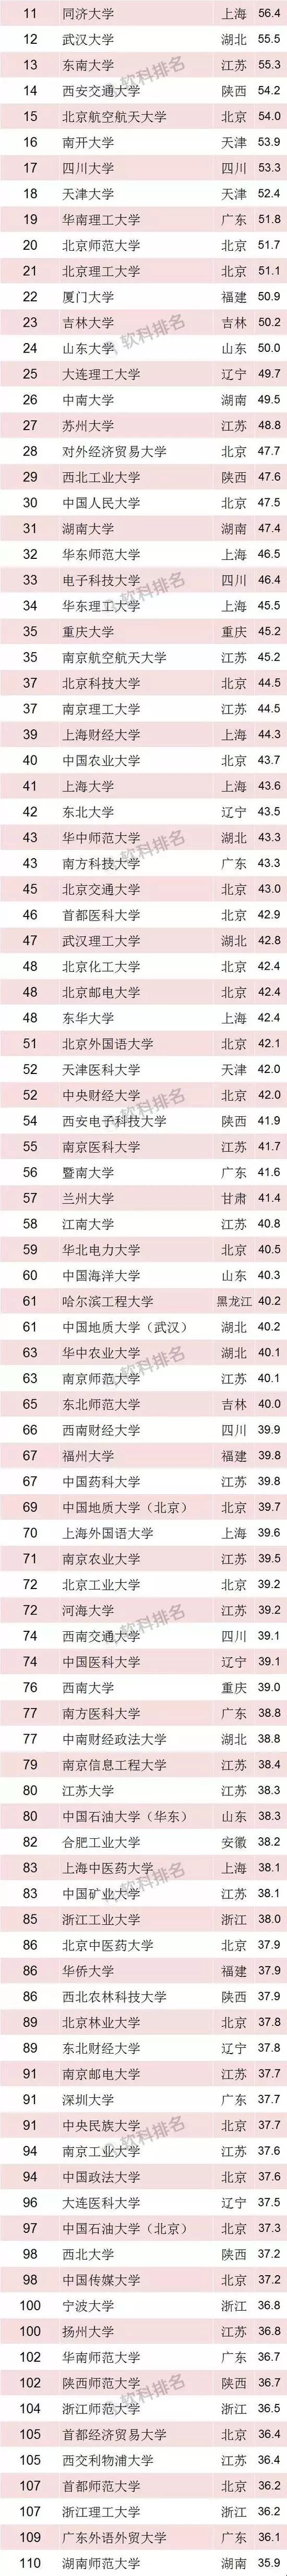 2019年船舶漆排行榜_寻找中国最贵香烟 中国香烟排行榜 36